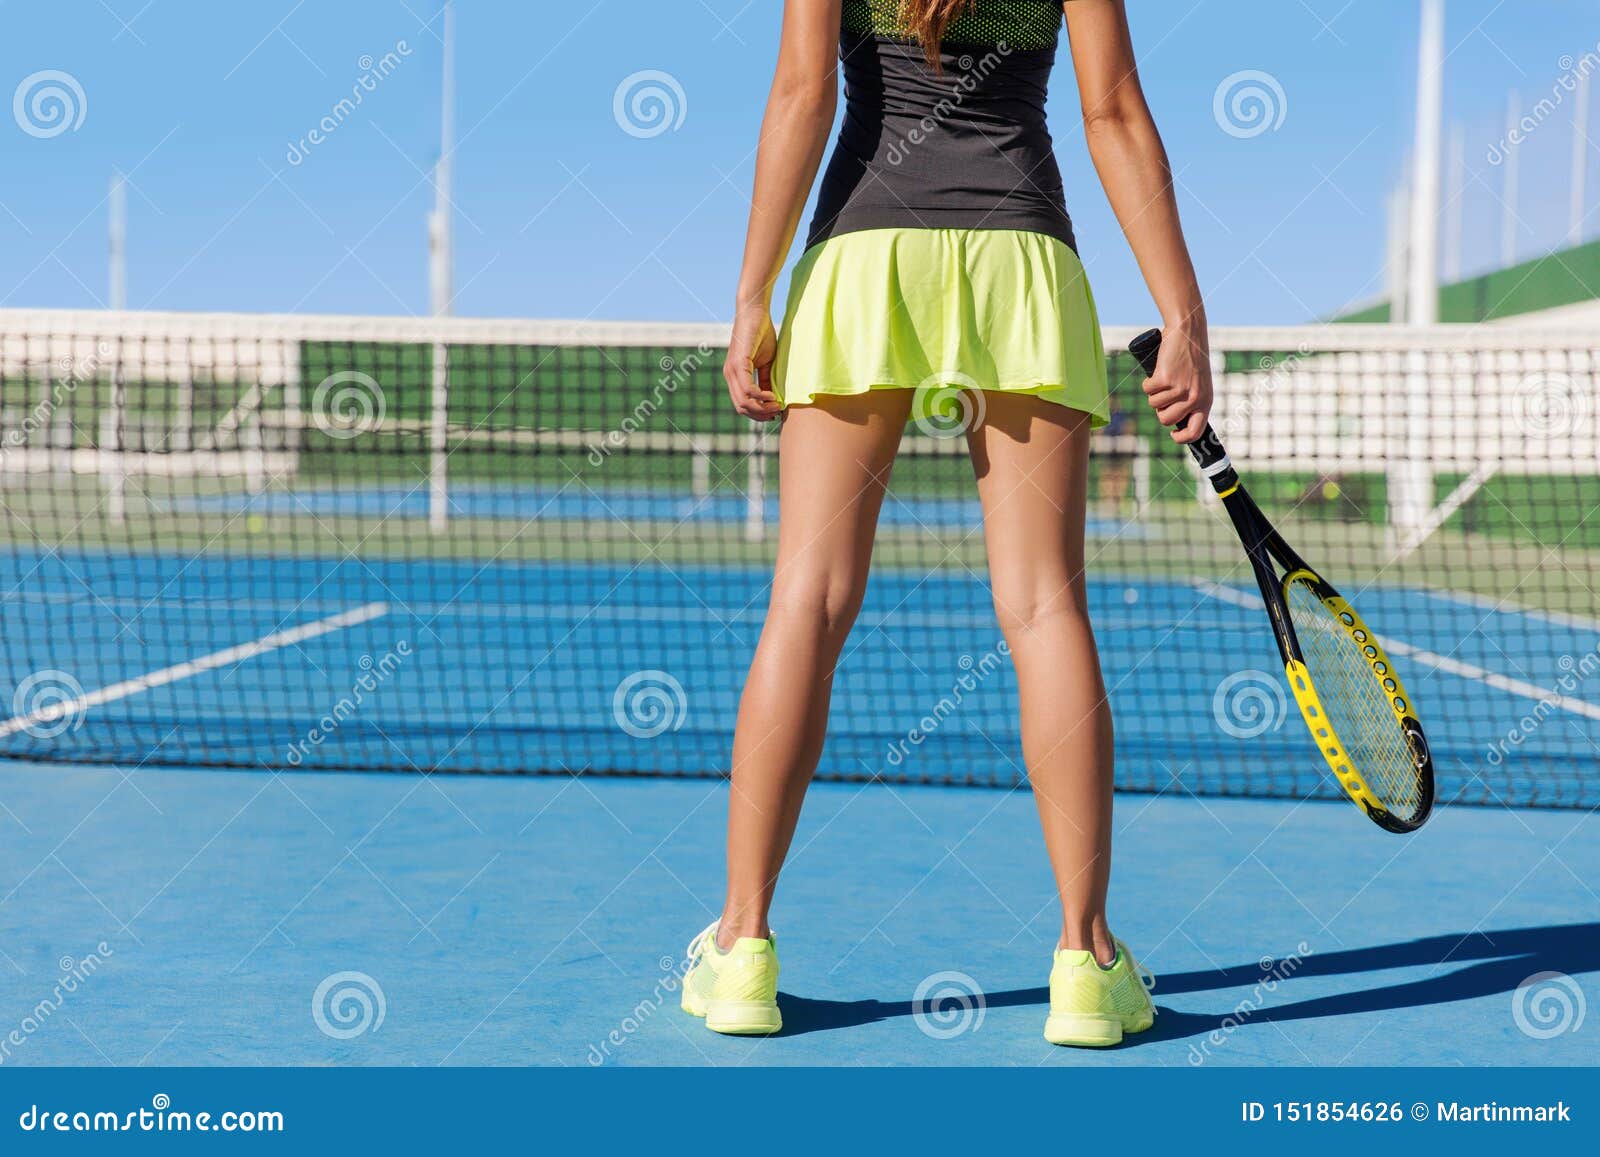 Jogadora De Tênis Invada E Serve Bola De Tênis Em Competição Jogos De Verão  E Treinamento Ao Ar Livre. Campo De Tênis Feminino Foto de Stock - Imagem  de profissional, divertimento: 261762162